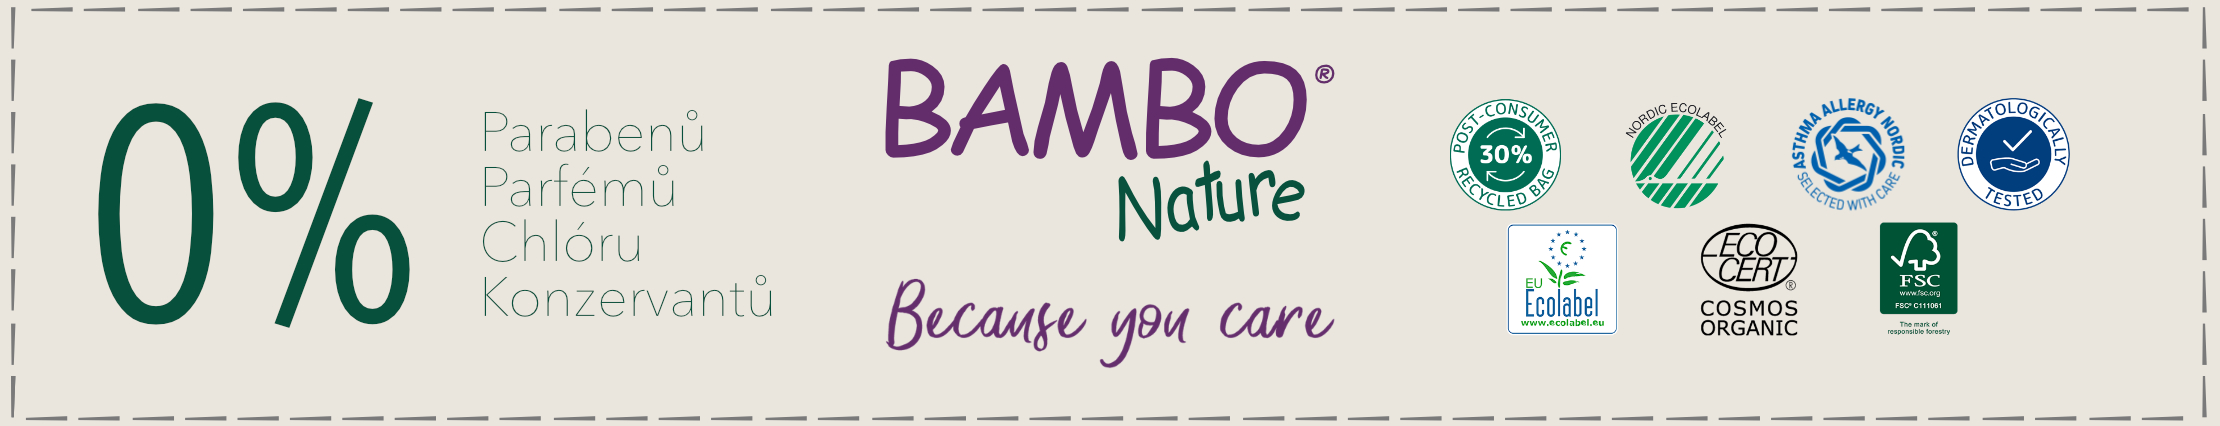 Bambo Nature pleny neobsahují parfémy ani parabeny